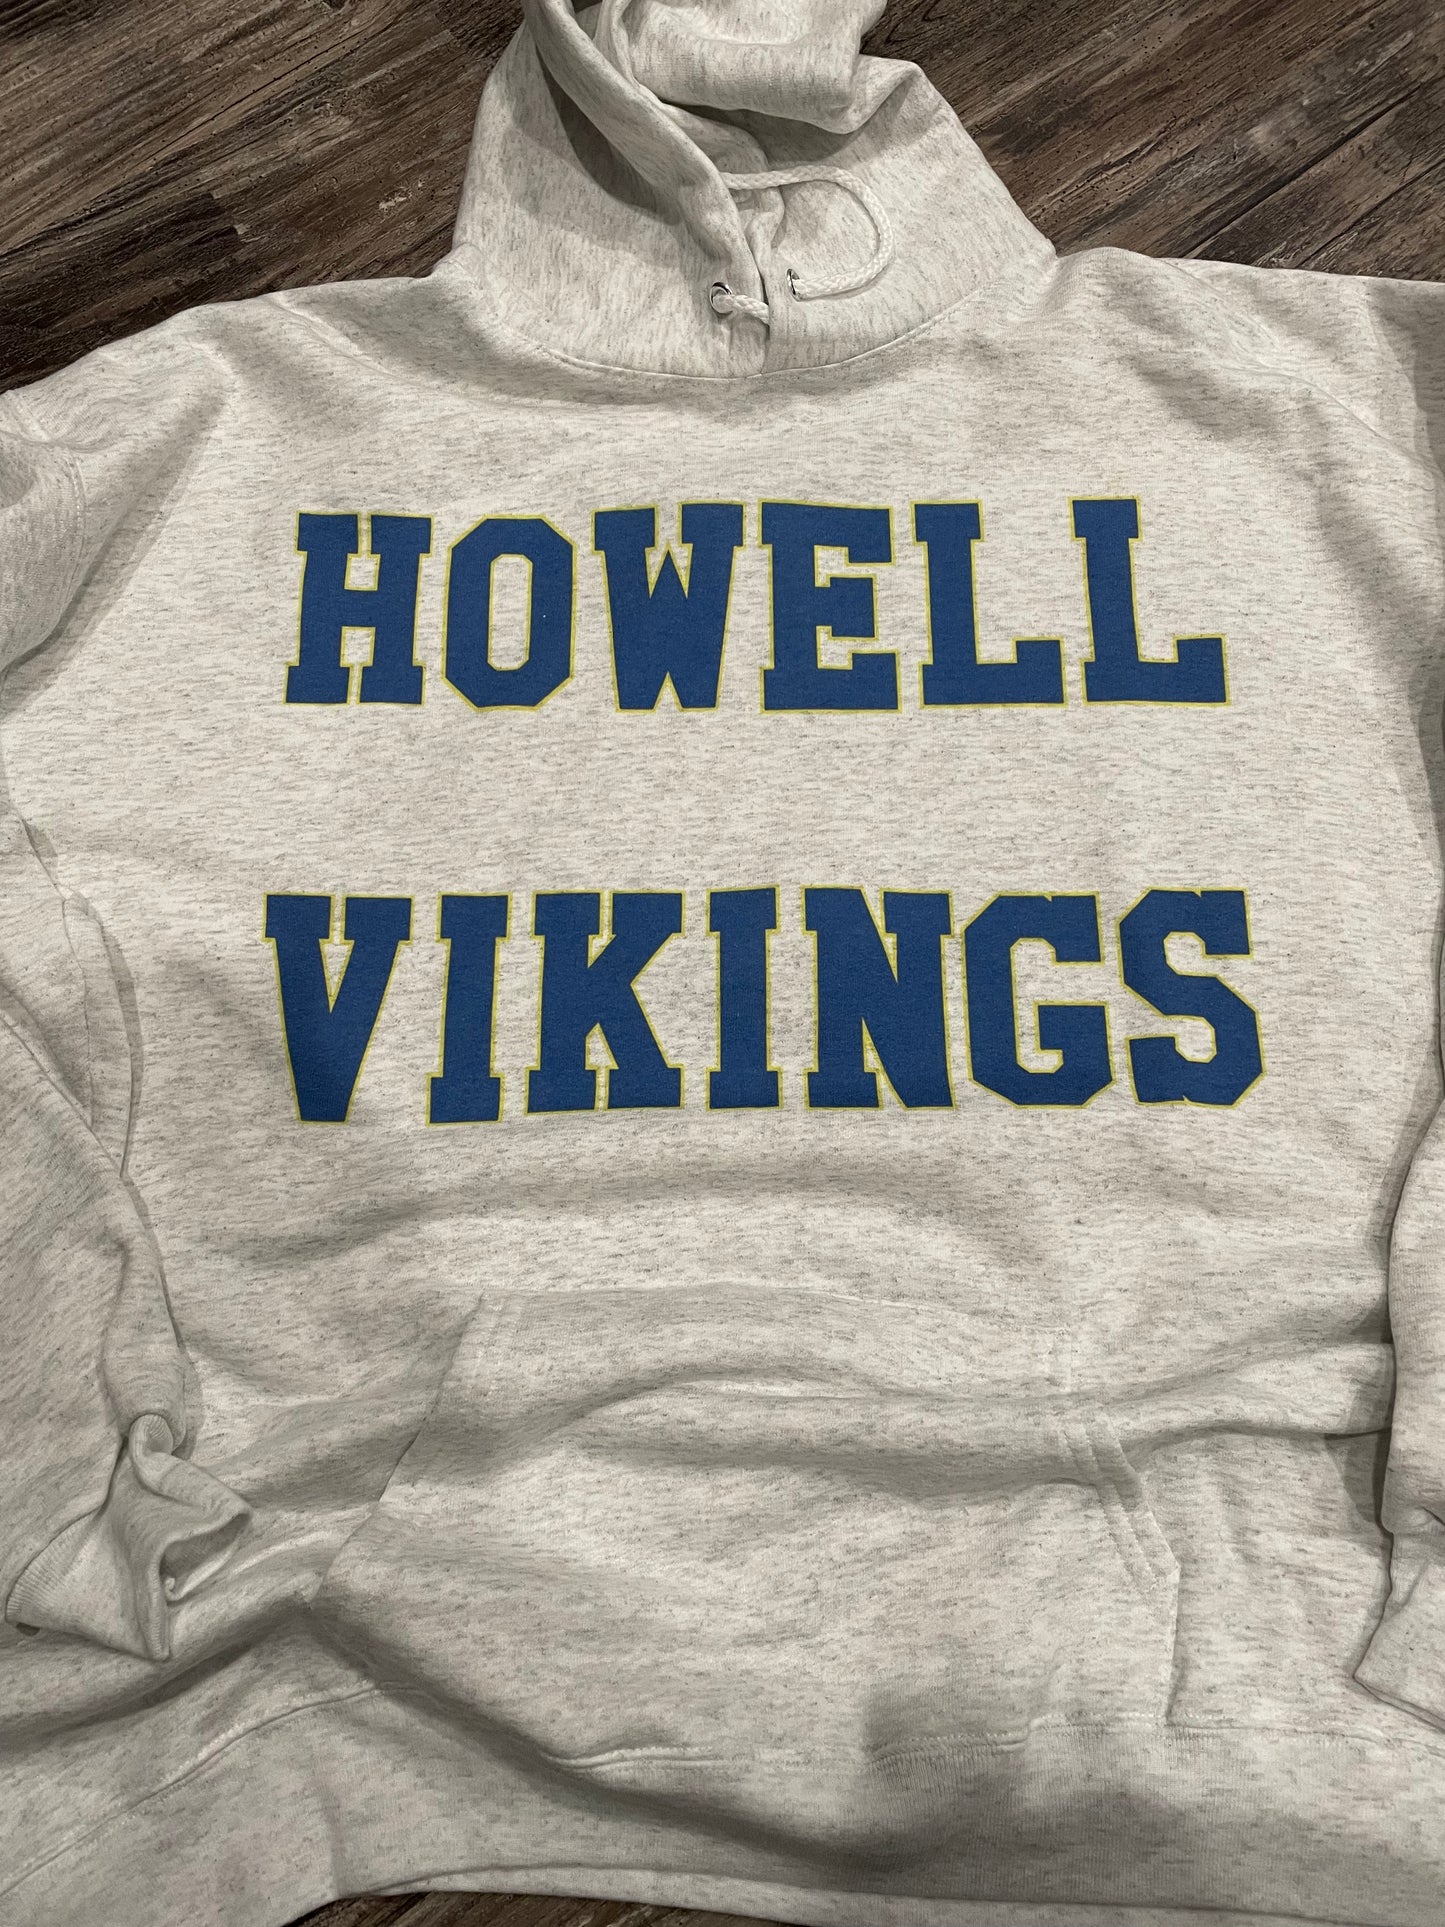 Howell Vikings Hoodie